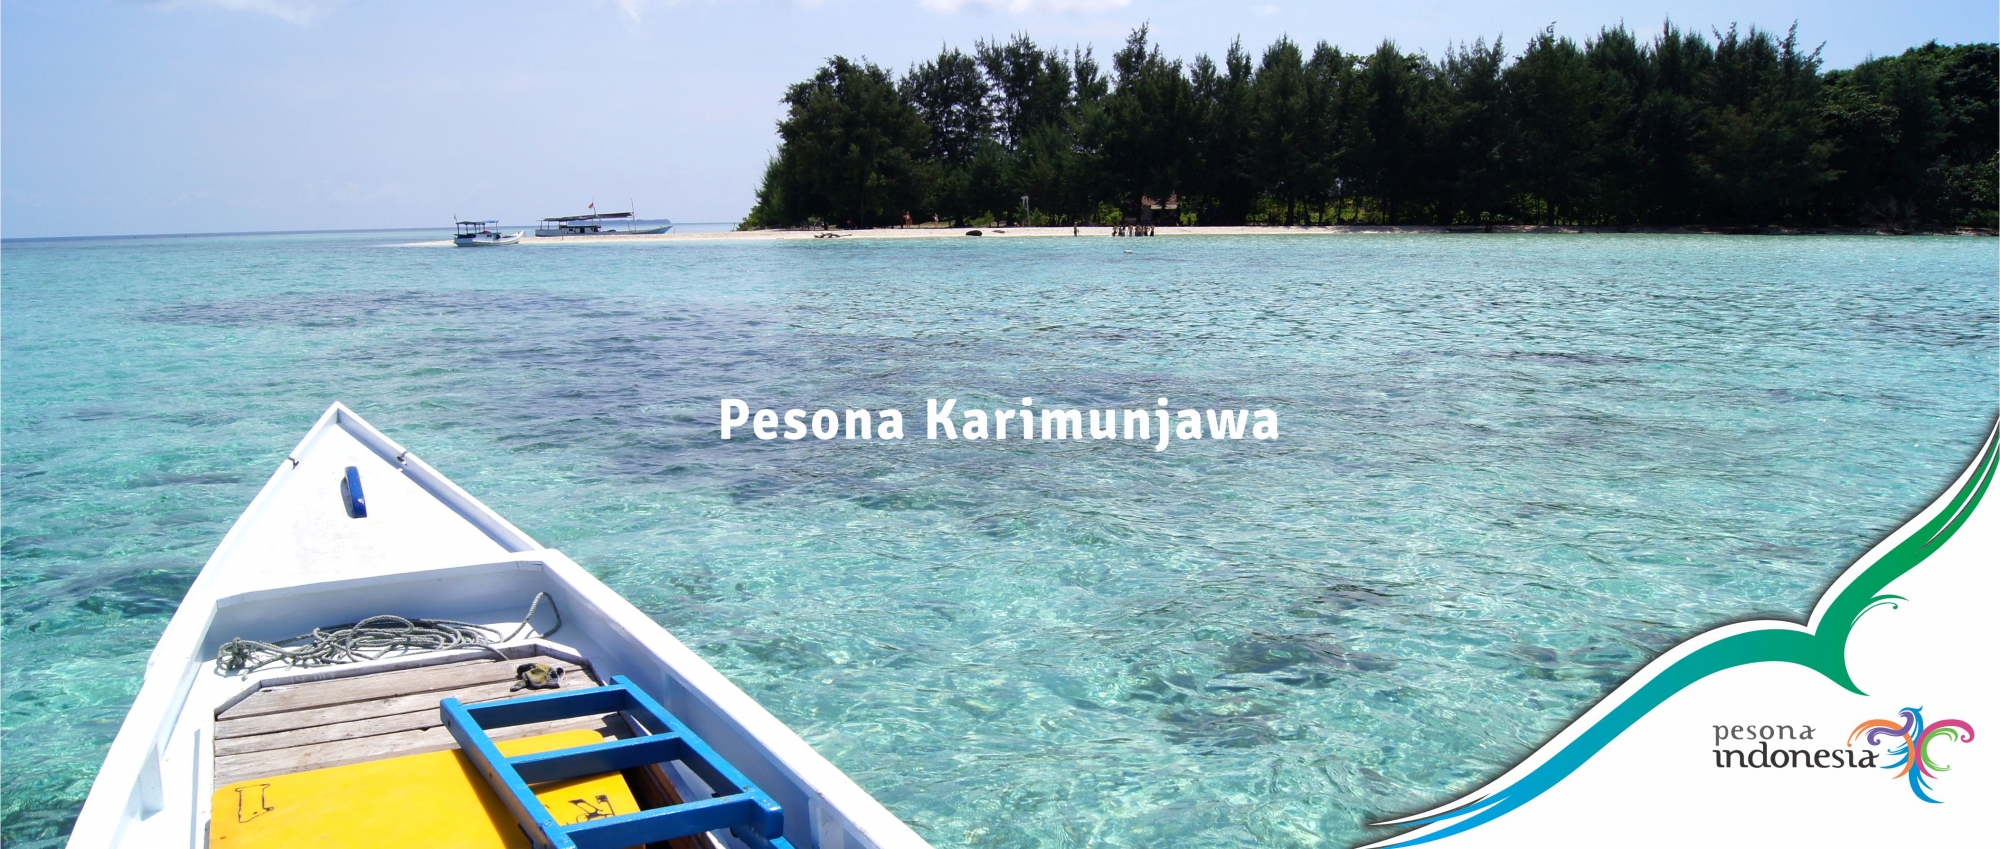 Naik Hingga 10 Persen Sektor Pariwisata Jawa Tengah